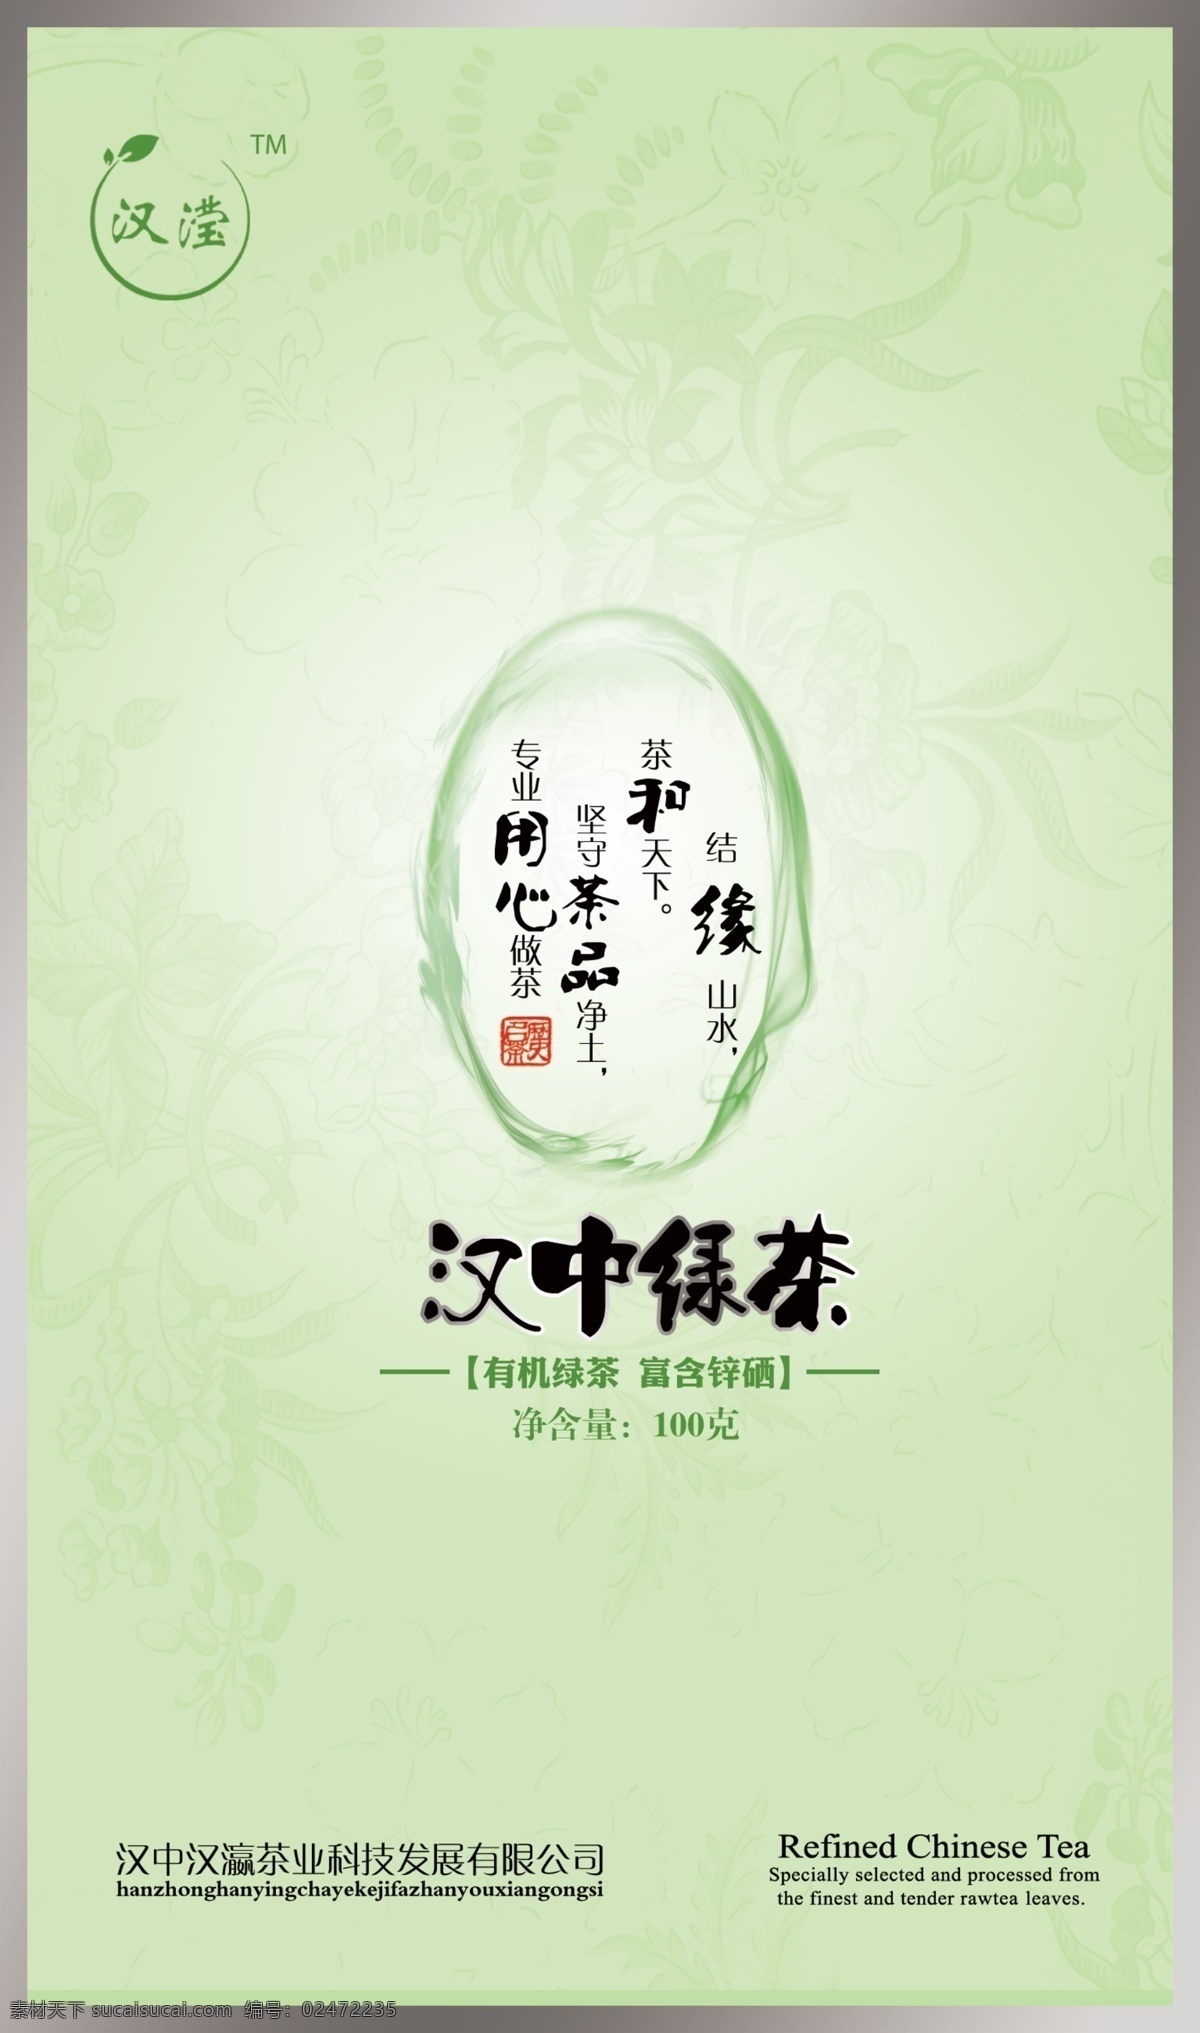 茶叶包装 铁盒 效果 汉中 汉中仙毫 汉中绿茶 包装设计 广告设计模板 源文件 绿色